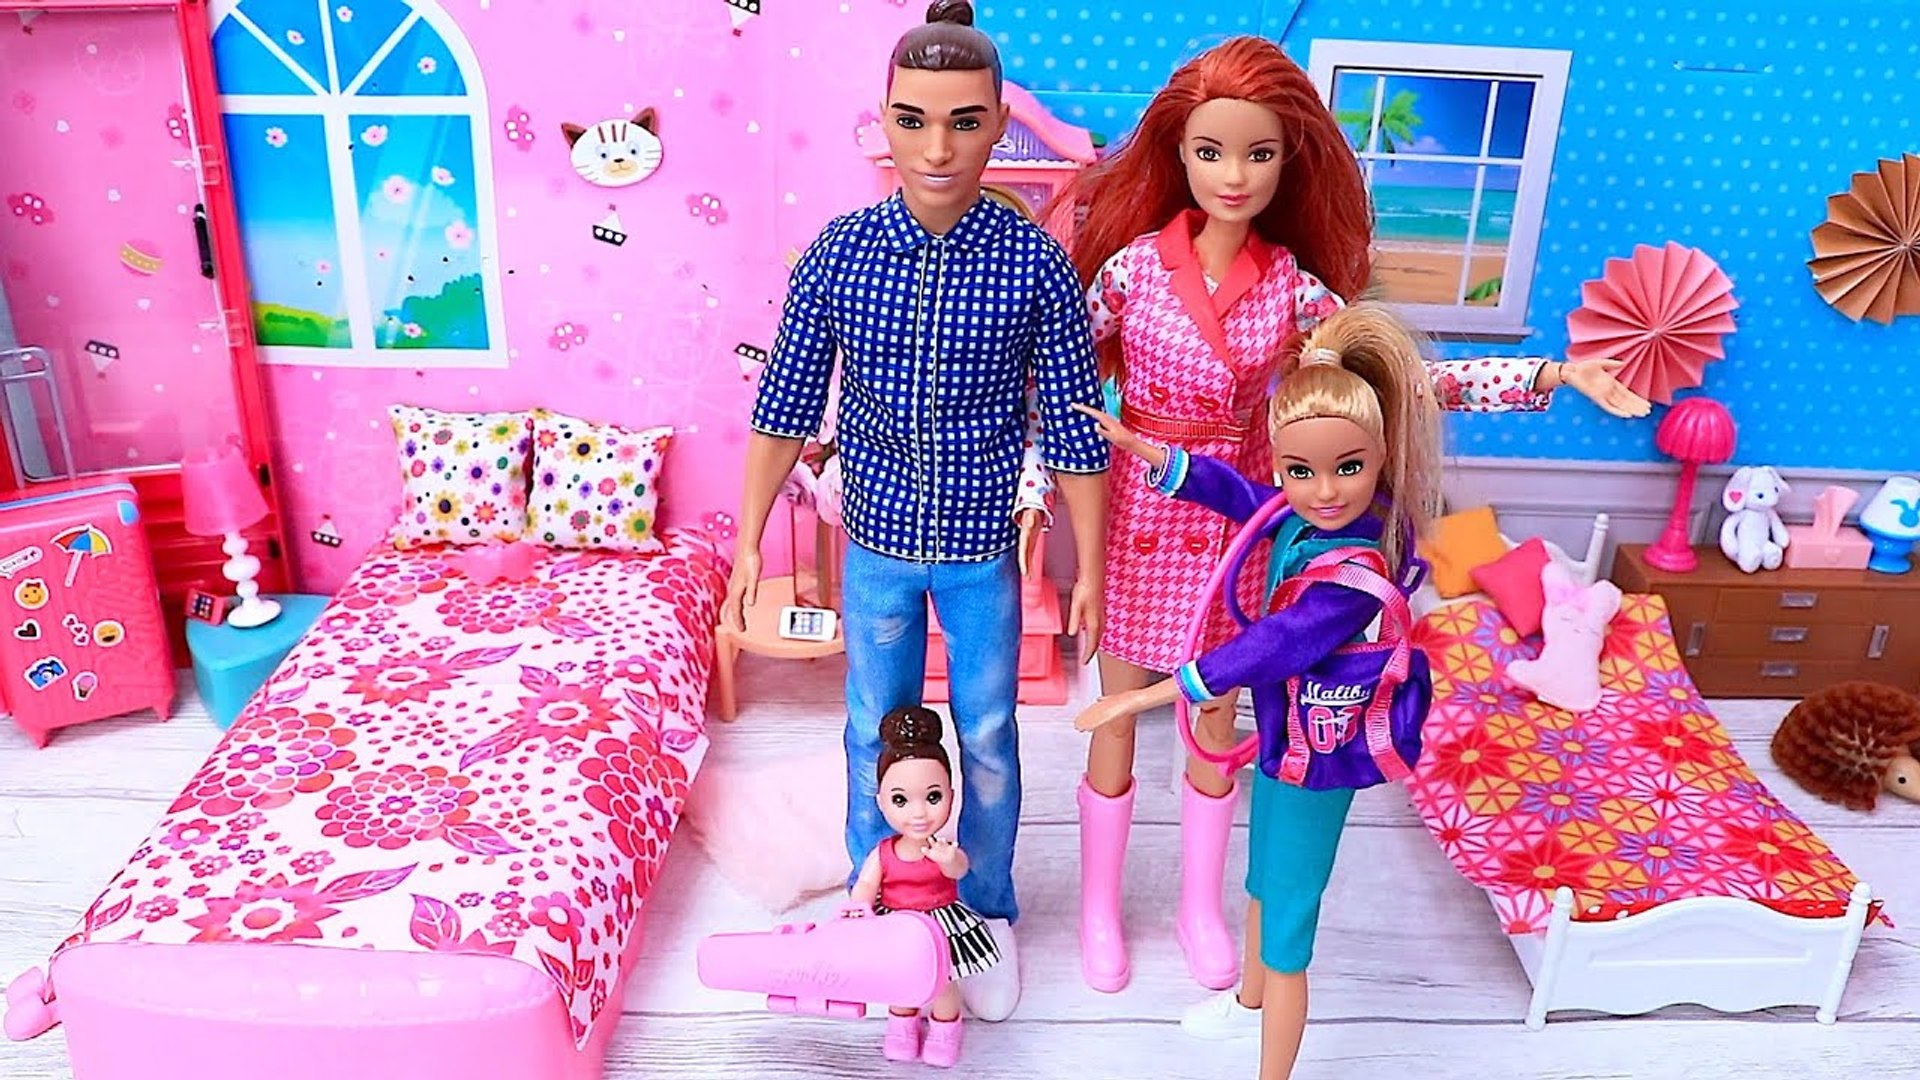 Jogos Online Gratis - Friv da Barbie de vestir a Barbie e o Ken -  Dailymotion Video